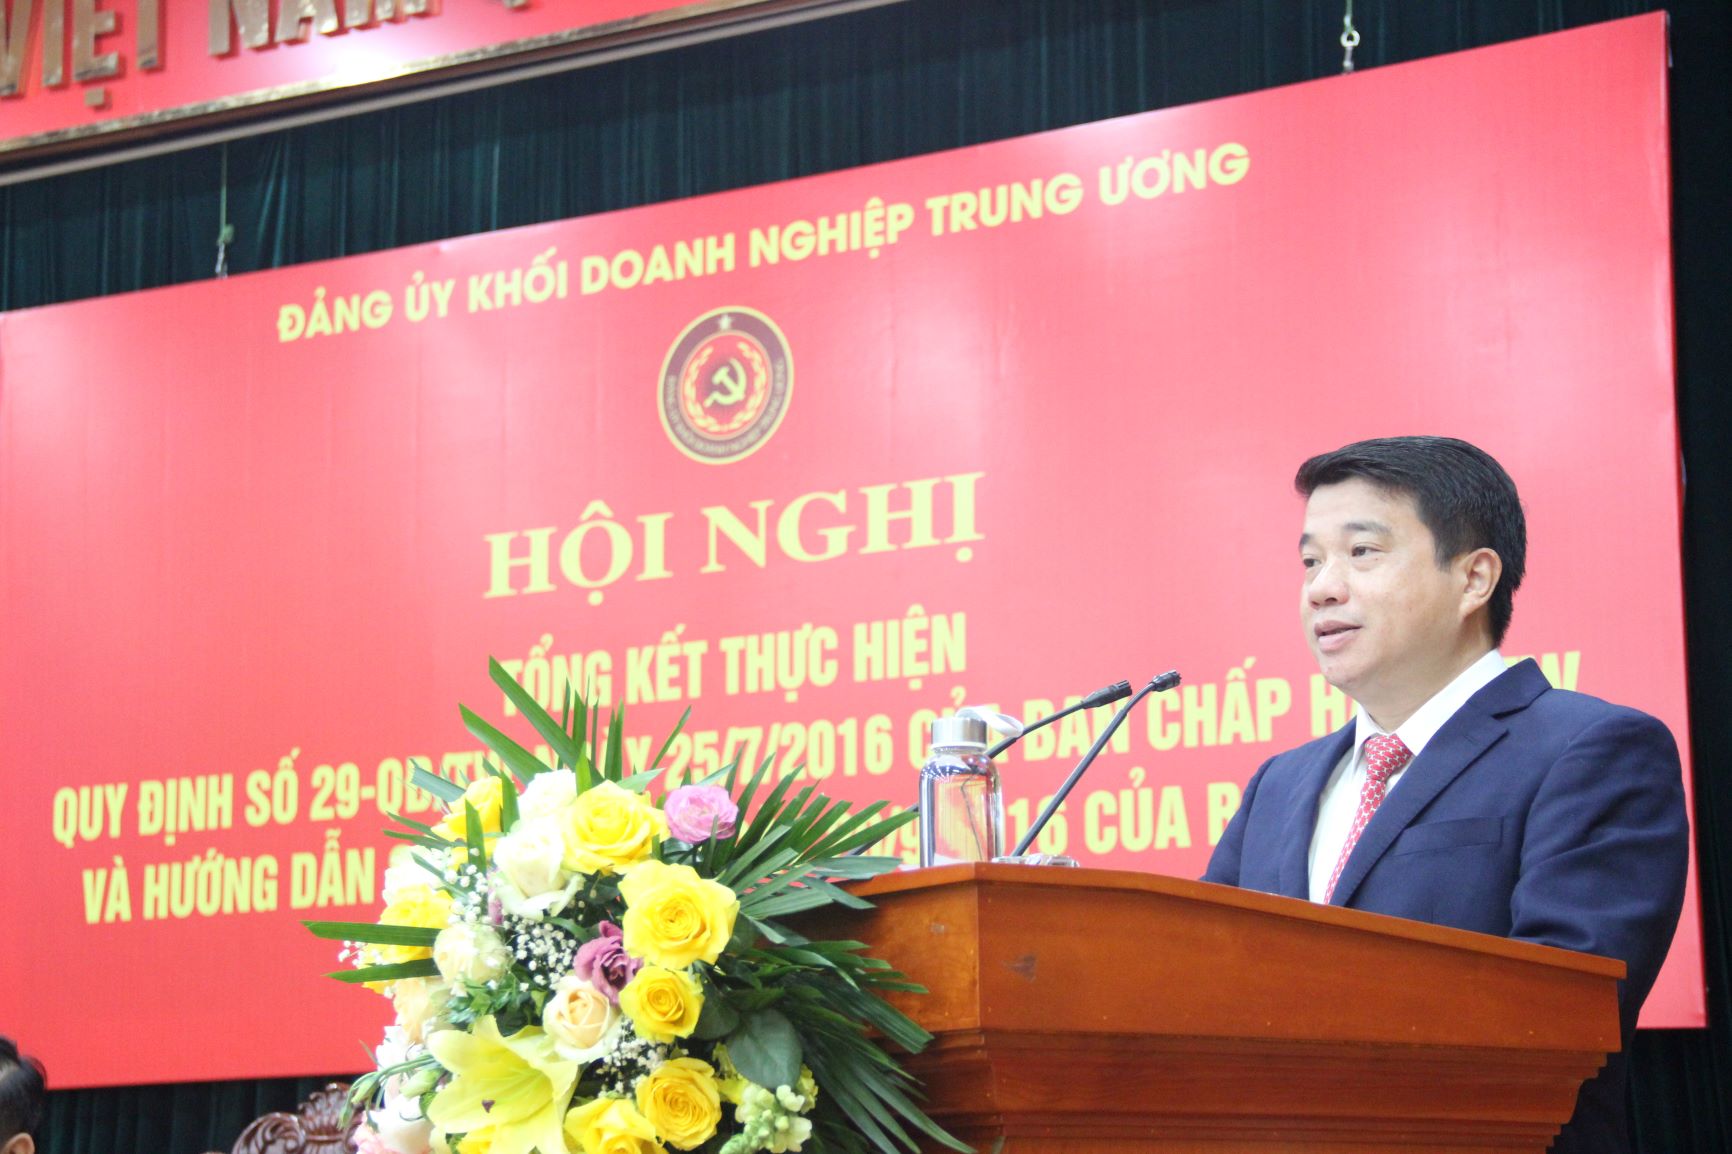 Đồng chí Y Thanh Hà Niê Kđăm, Ủy viên BCH Trung ương Đảng, Bí thư Đảng ủy Khối phát biểu khai mạc Hội nghị.